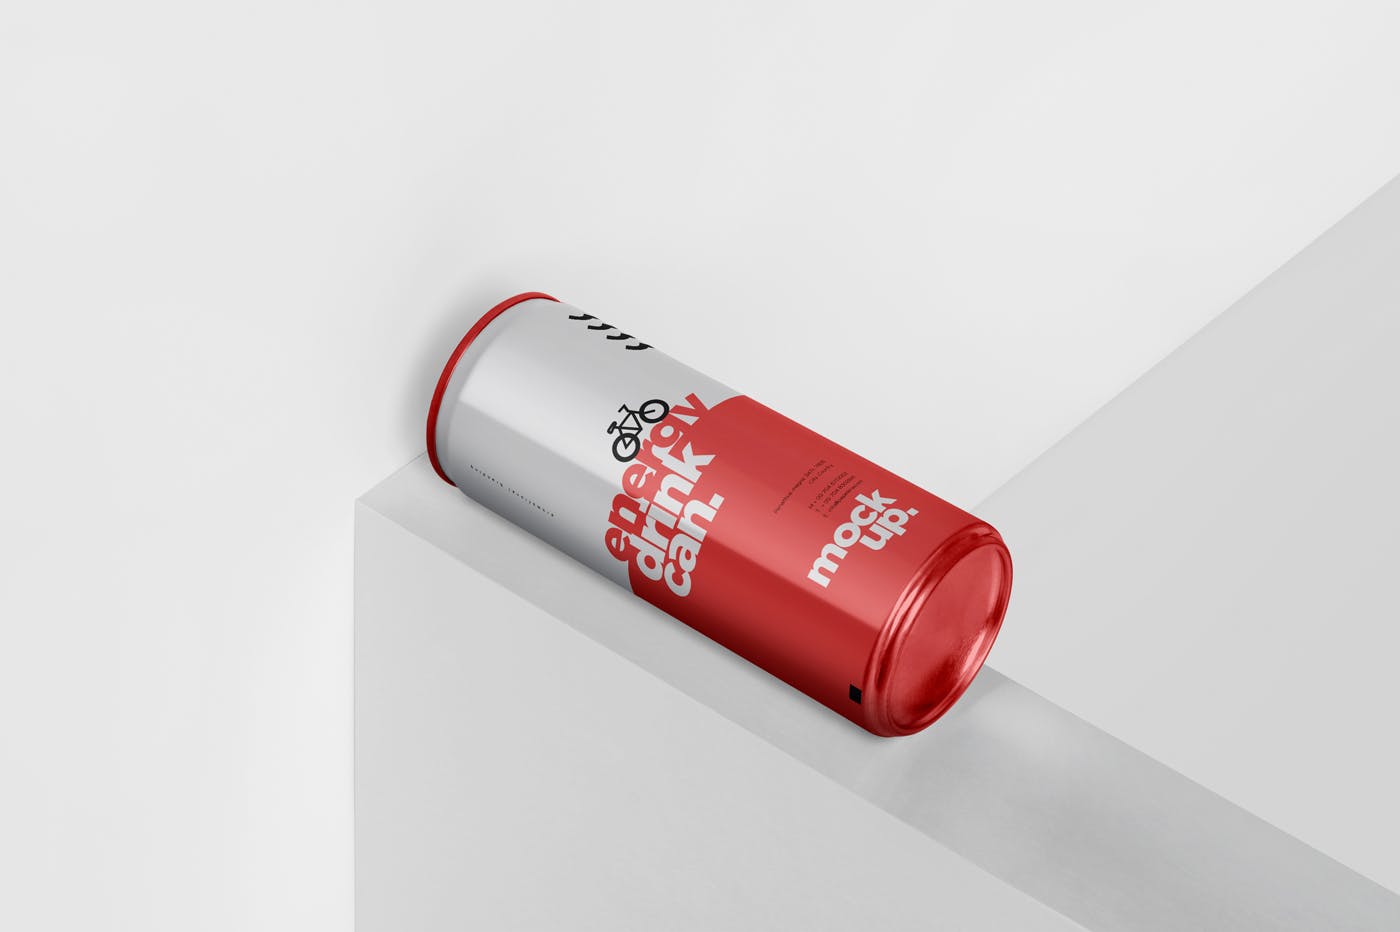 能量饮料易拉罐罐头外观设计素材中国精选模板 Energy Drink Can Mock-Up – 250 ml插图(4)